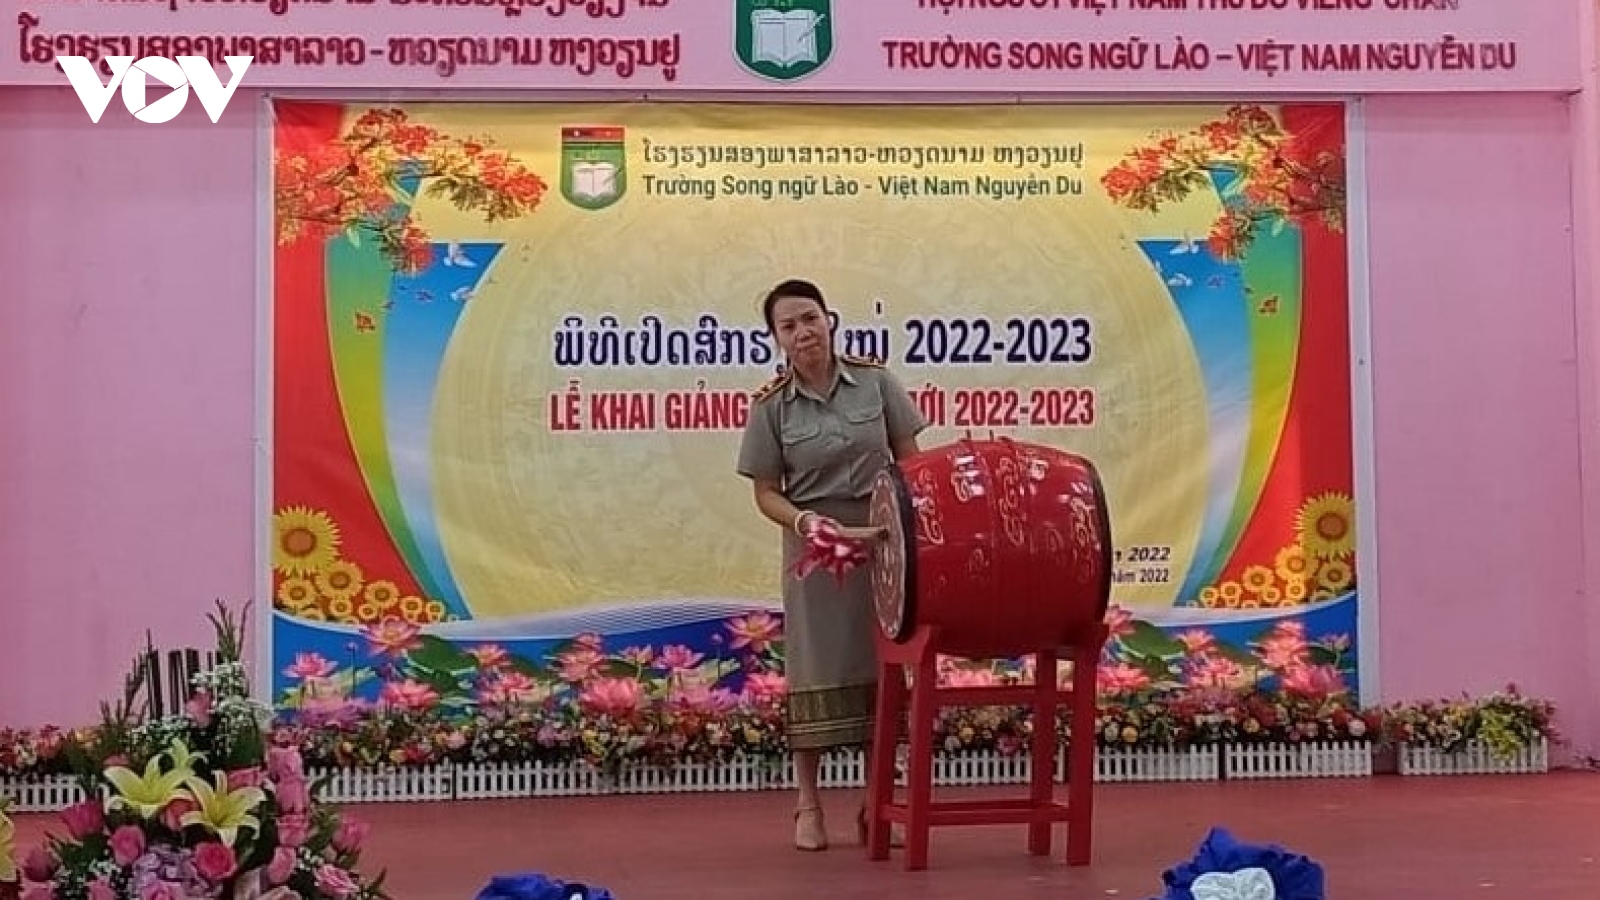 Trường song ngữ Lào-Việt Nam Nguyễn Du khai giảng năm học 2022-2023